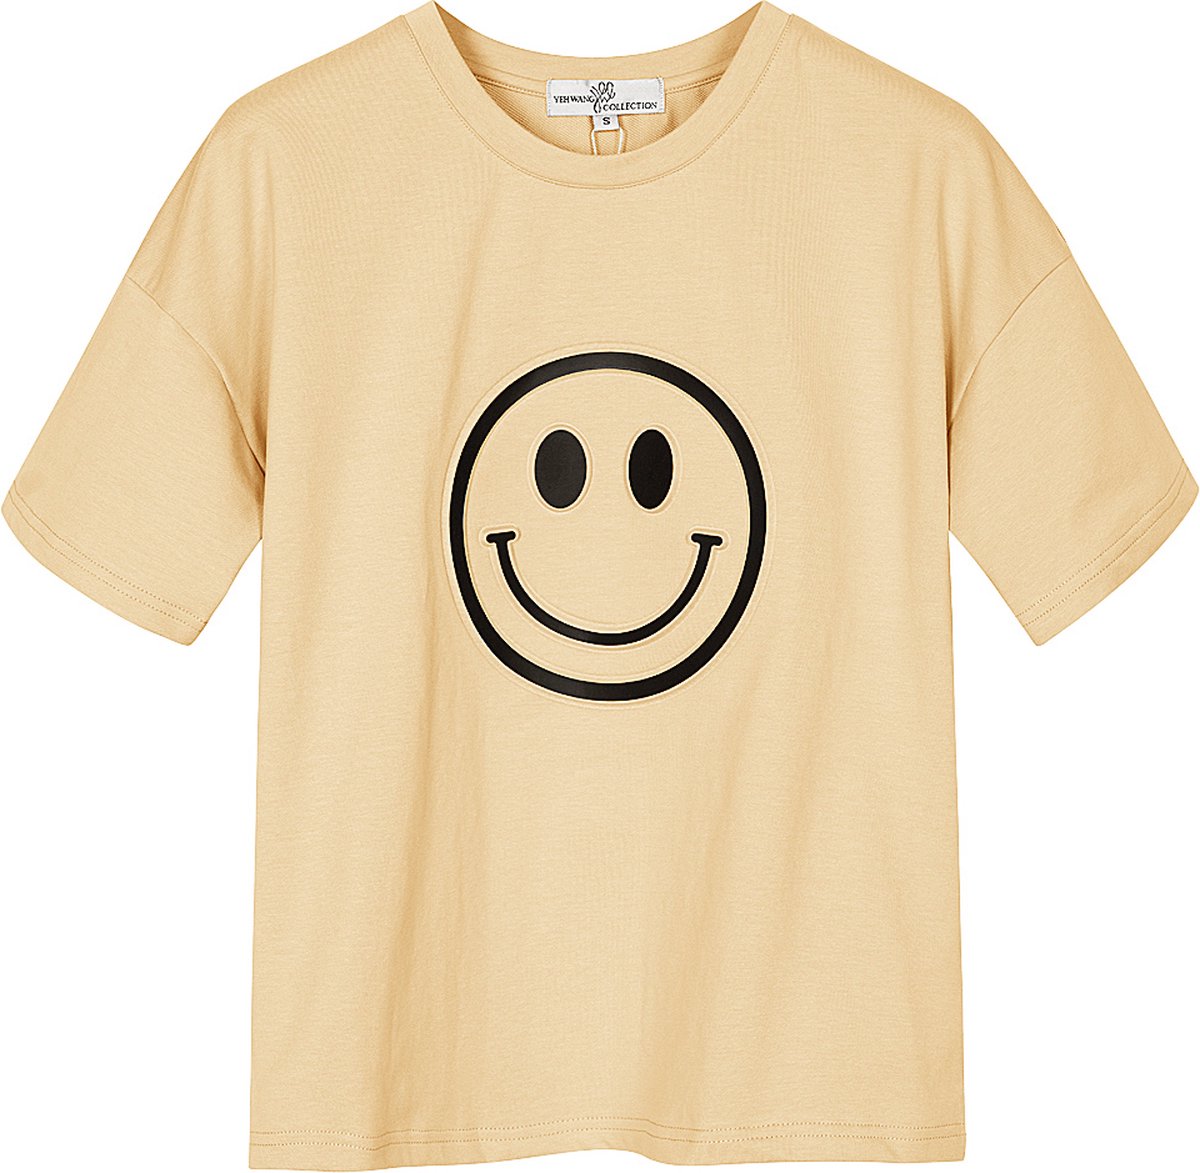 Yehwang - T-shirt met smiley - Crème - Maat: M